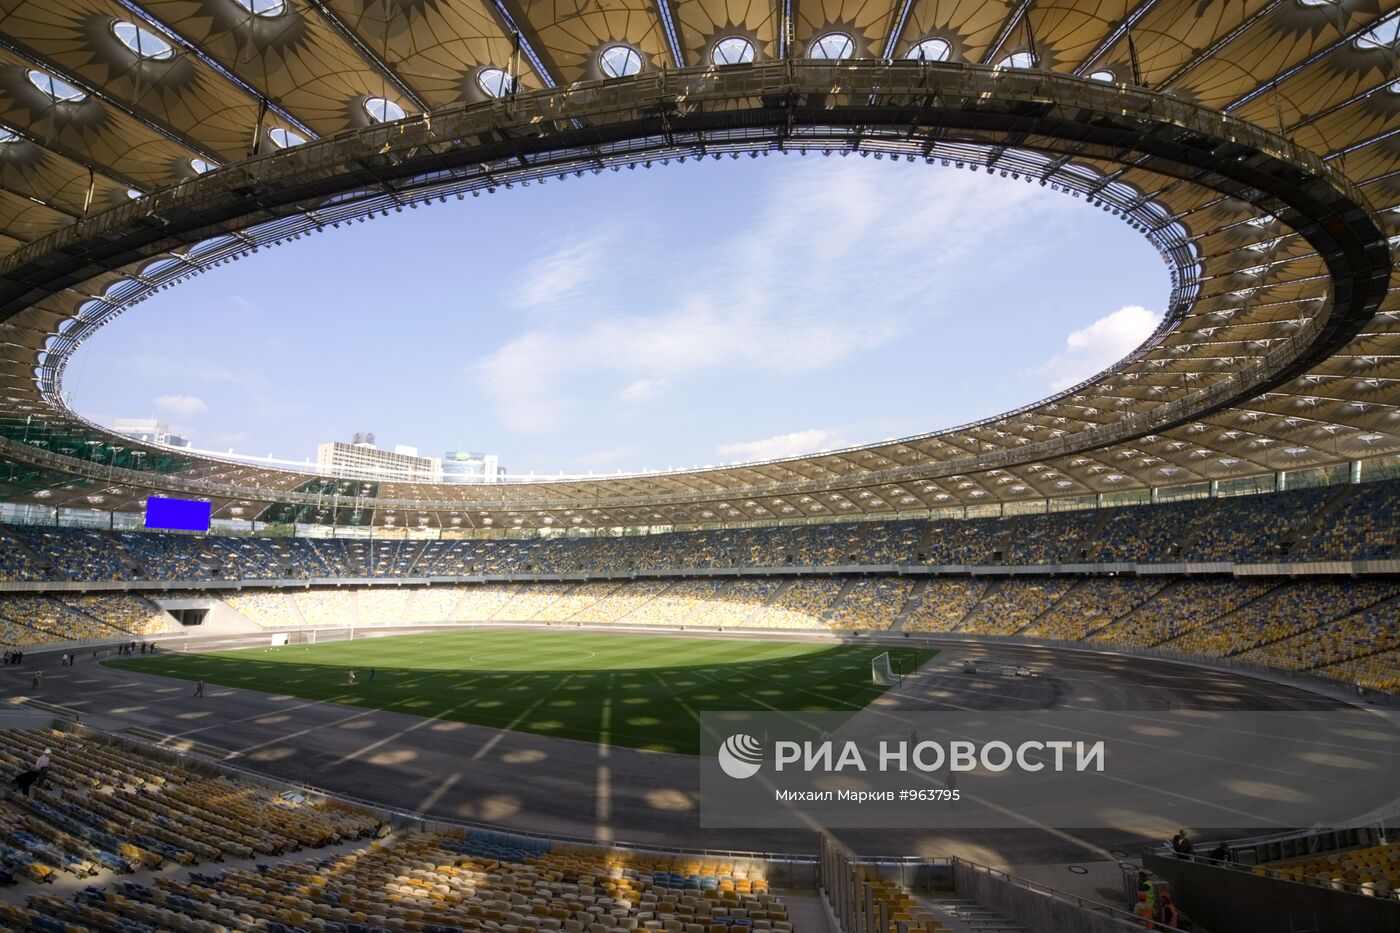 Стадион Национального спортивного комплекса "Олимпийский" в Киев